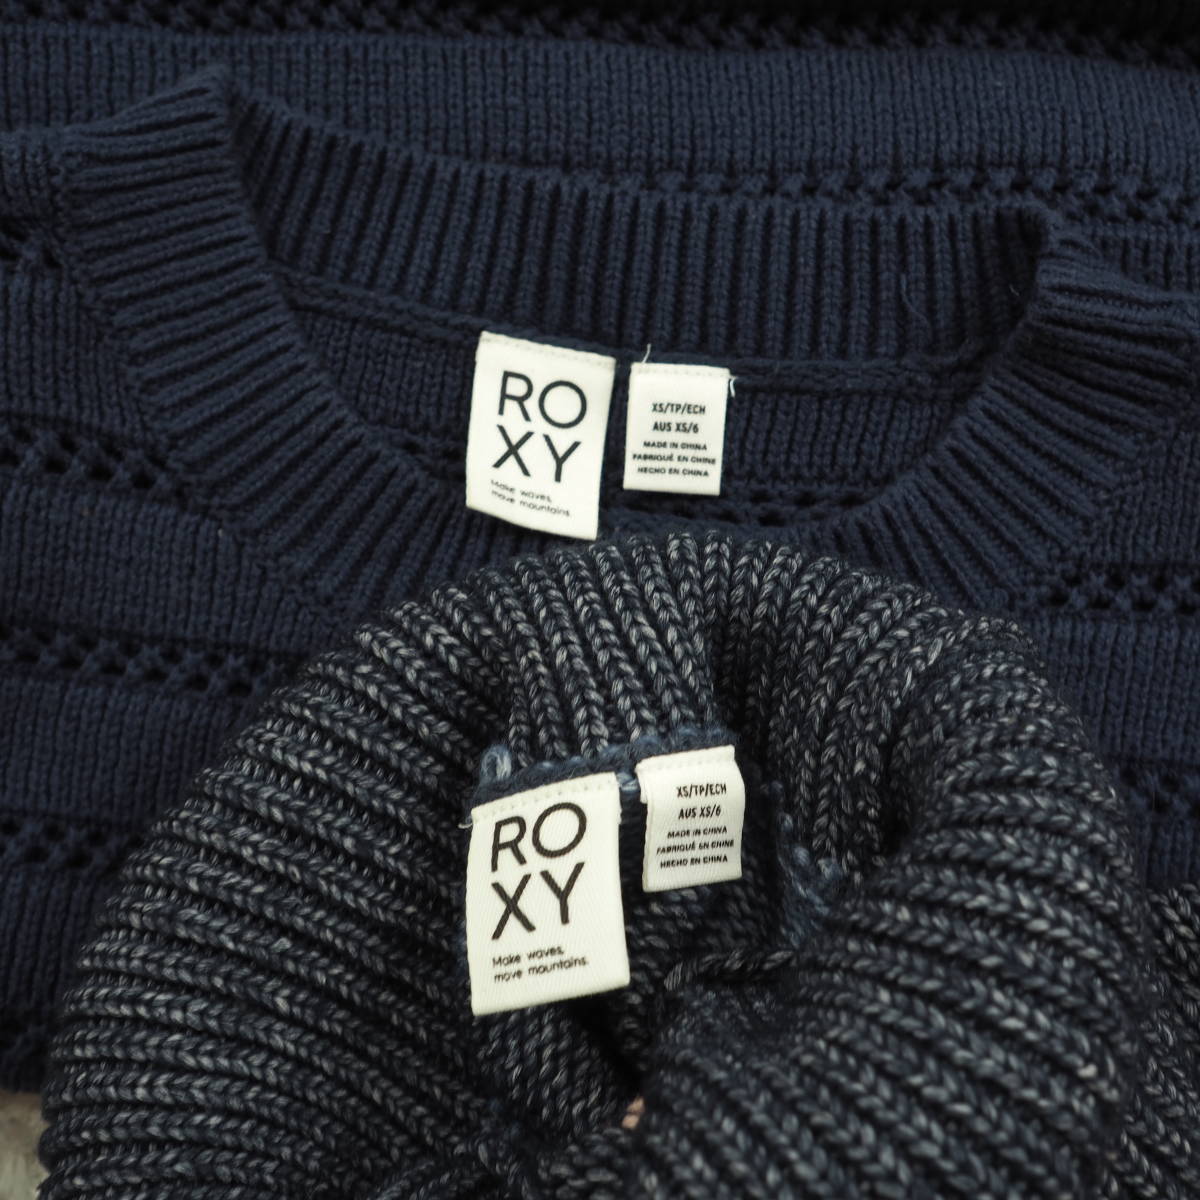 G6088.89*ROXY Roxy * knitted * sweater * pull over *ta-toru neck *2 point set * set sale * navy blue navy *XS